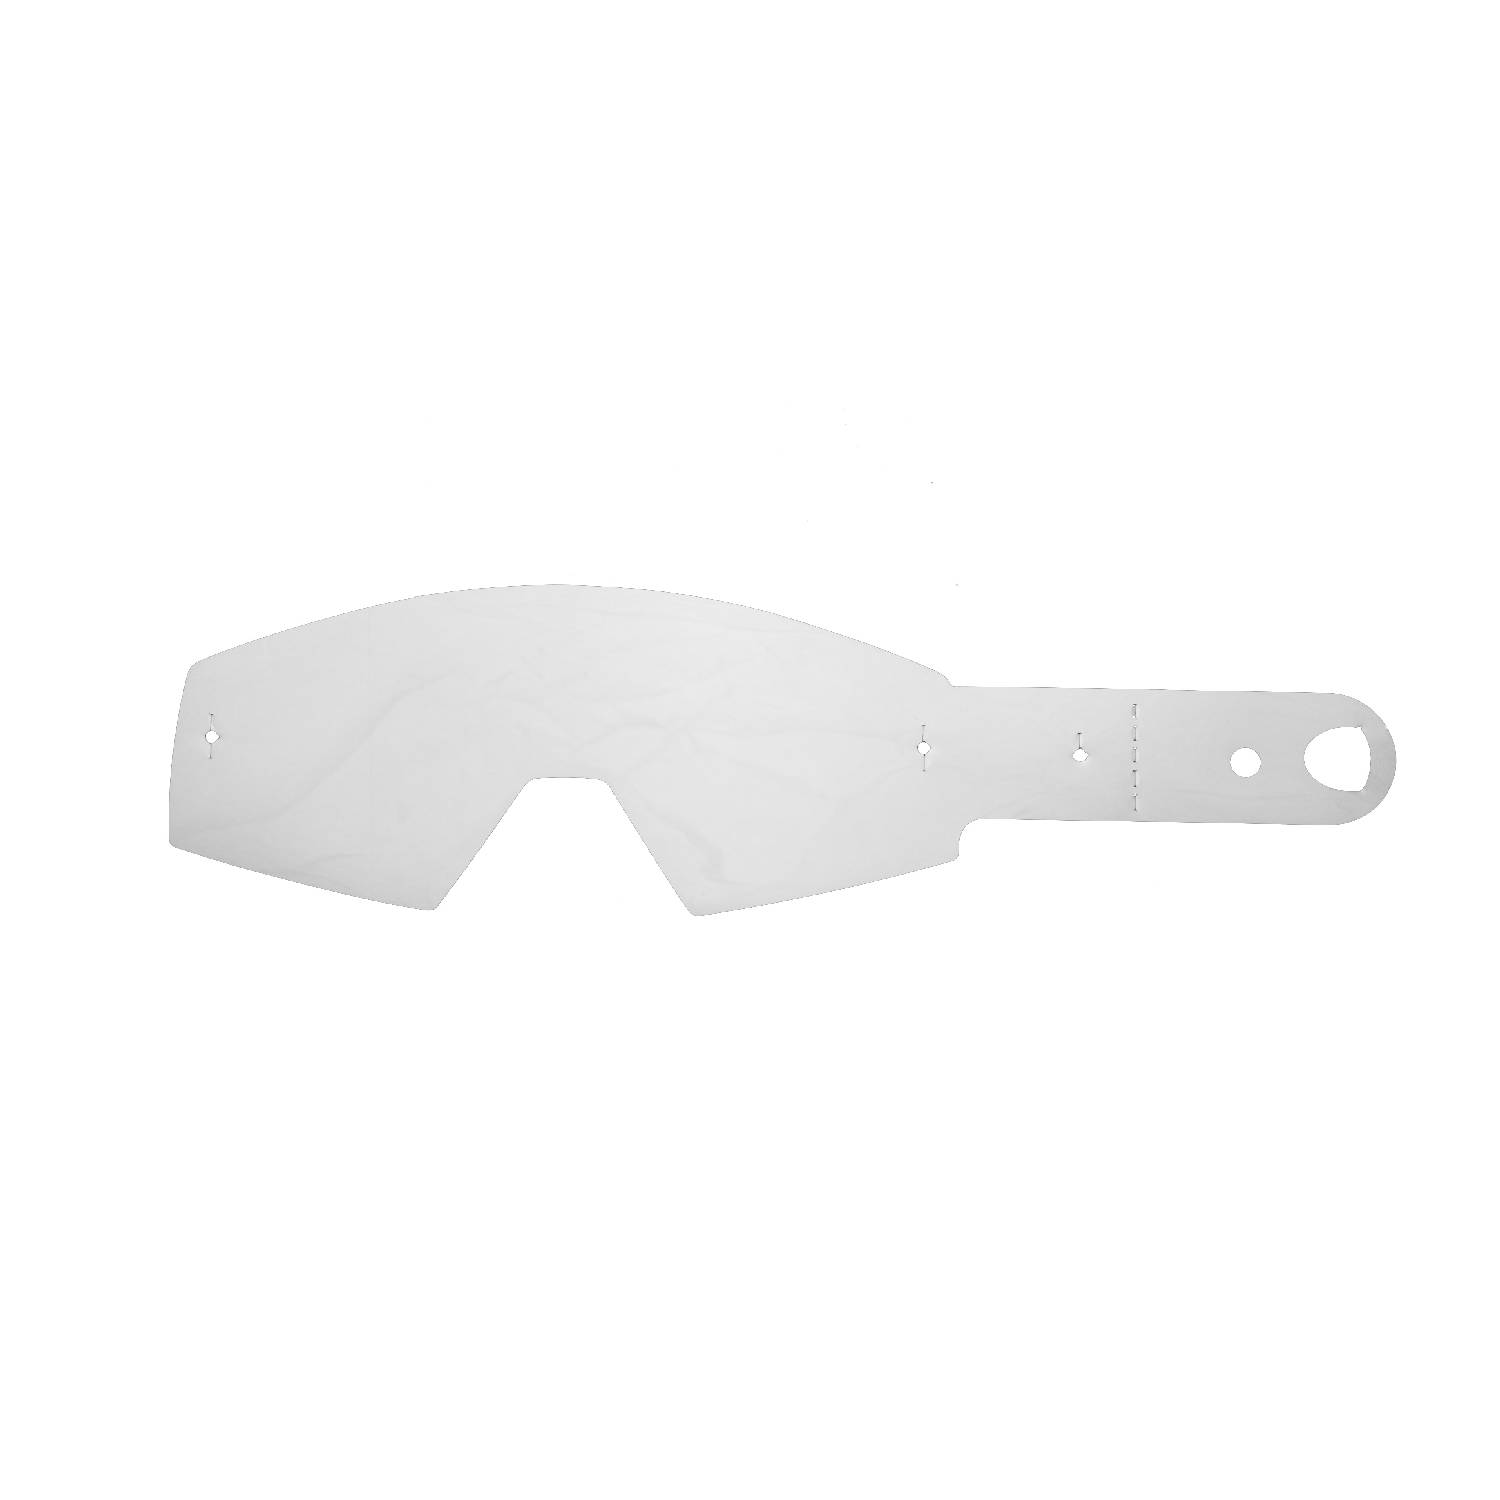 Lenti a strappo compatibili per occhiale/maschera Fox Main Encore / Main Pro Mx kit 20 pz